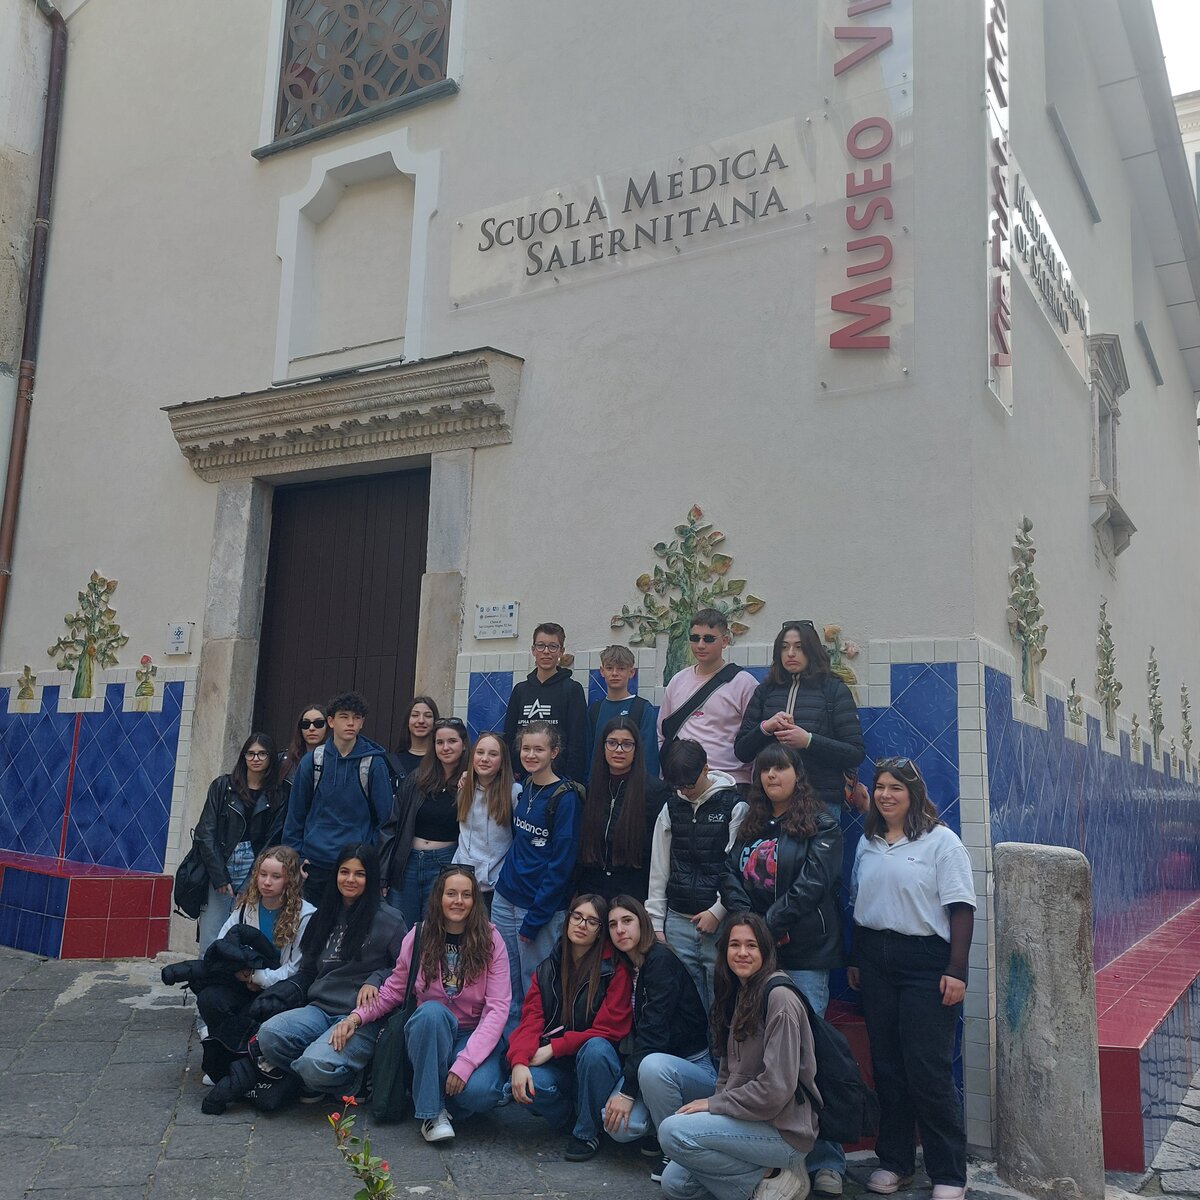 Gruppenfoto vor der Medizinschule von Salerno